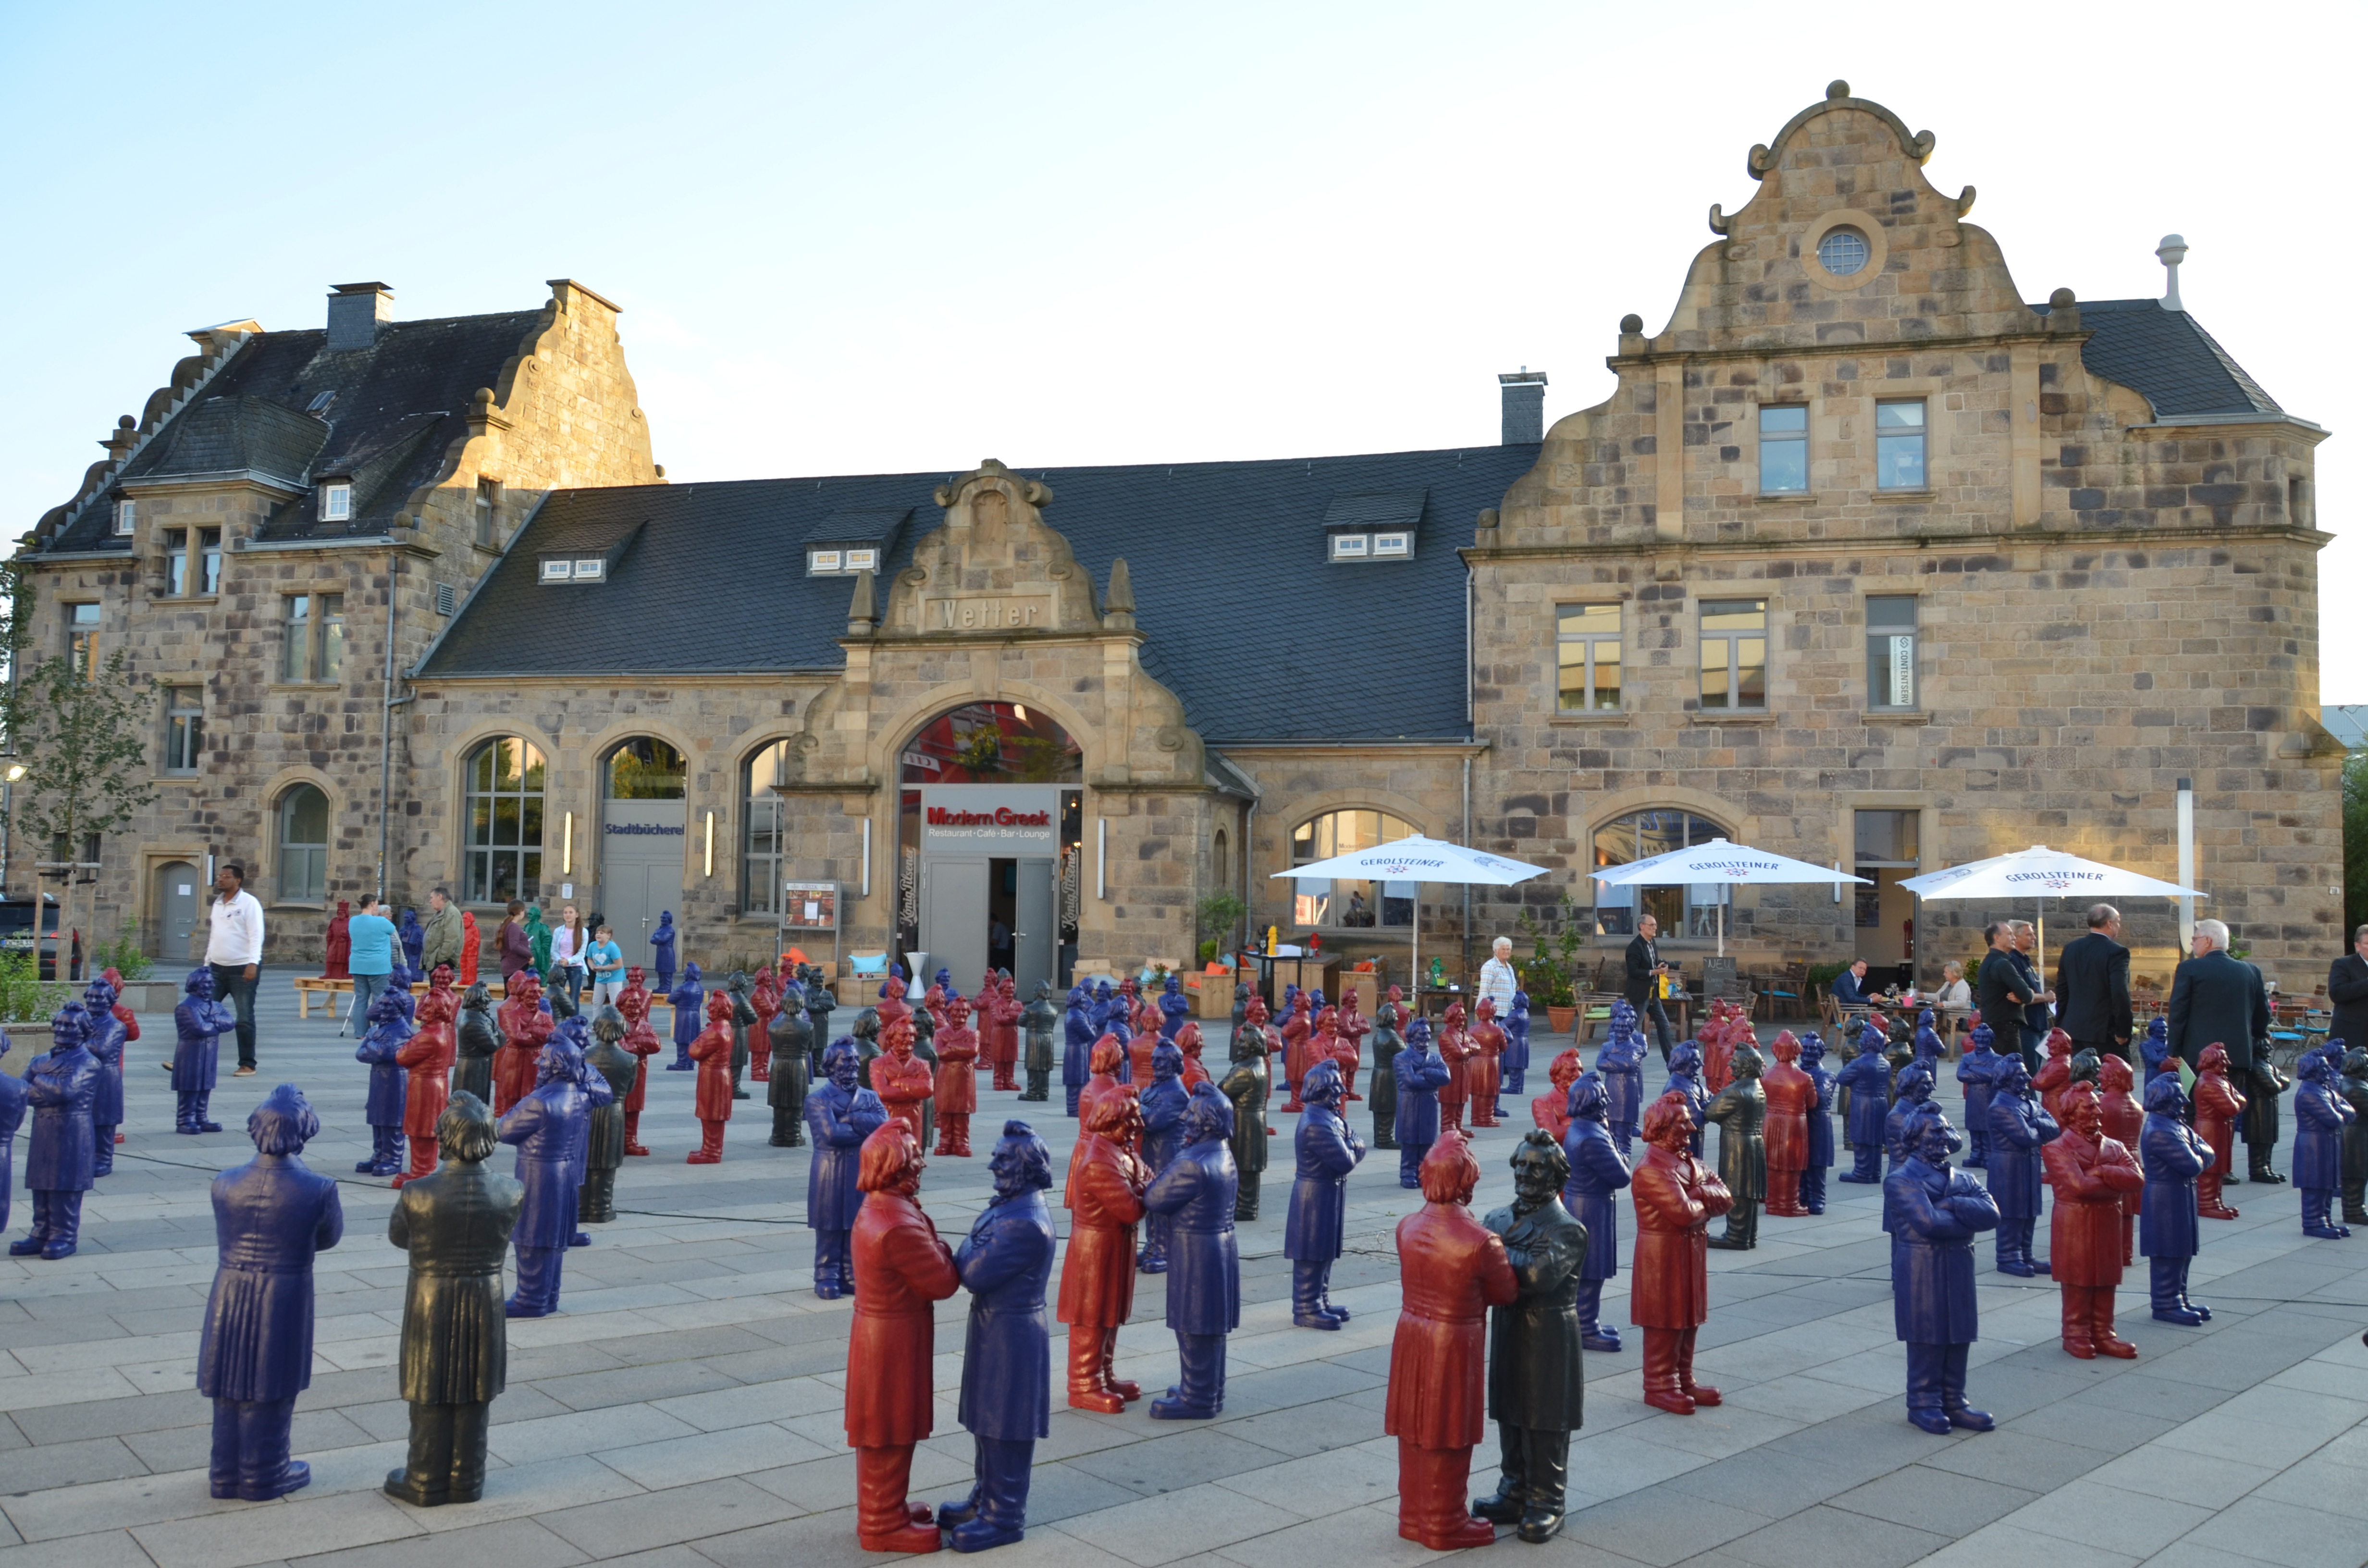 Installation mit 125 Friedrich-Harkort-Skulpturen auf dem Bahnhofsplatz am 28.09.2015 in Wetter (Ruhr)